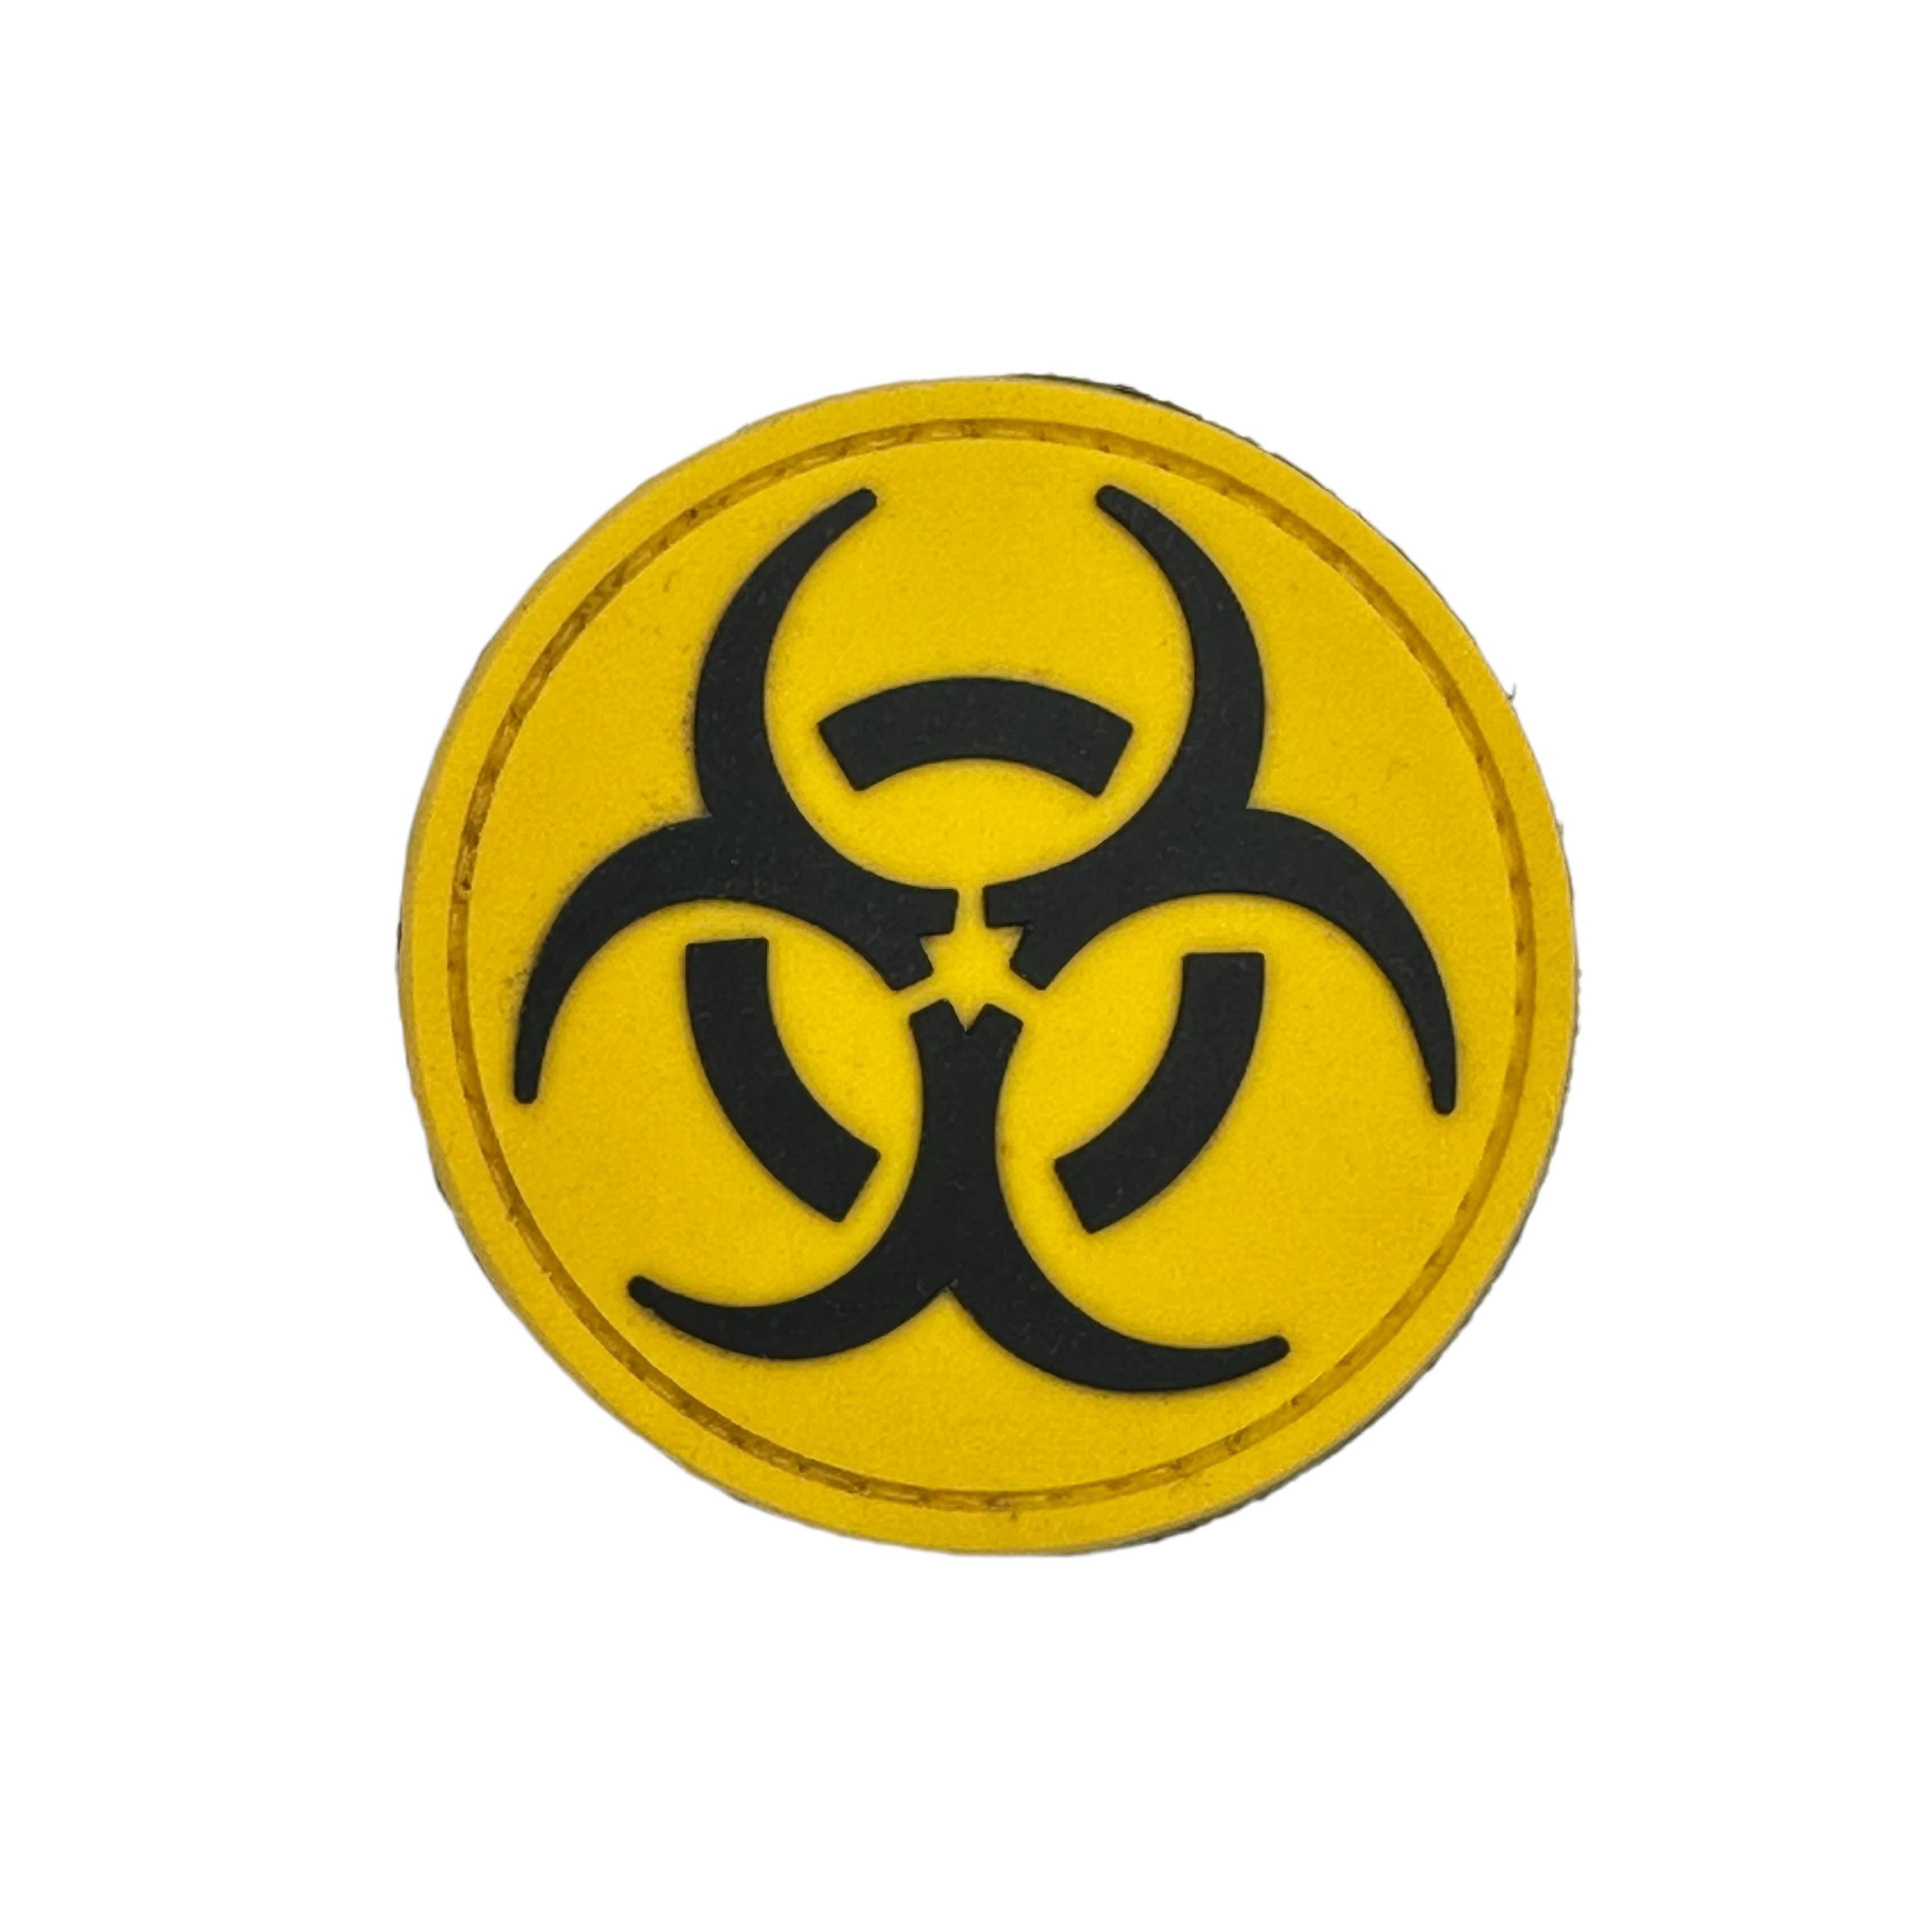 Rubber Patch - Biohazard (Round)